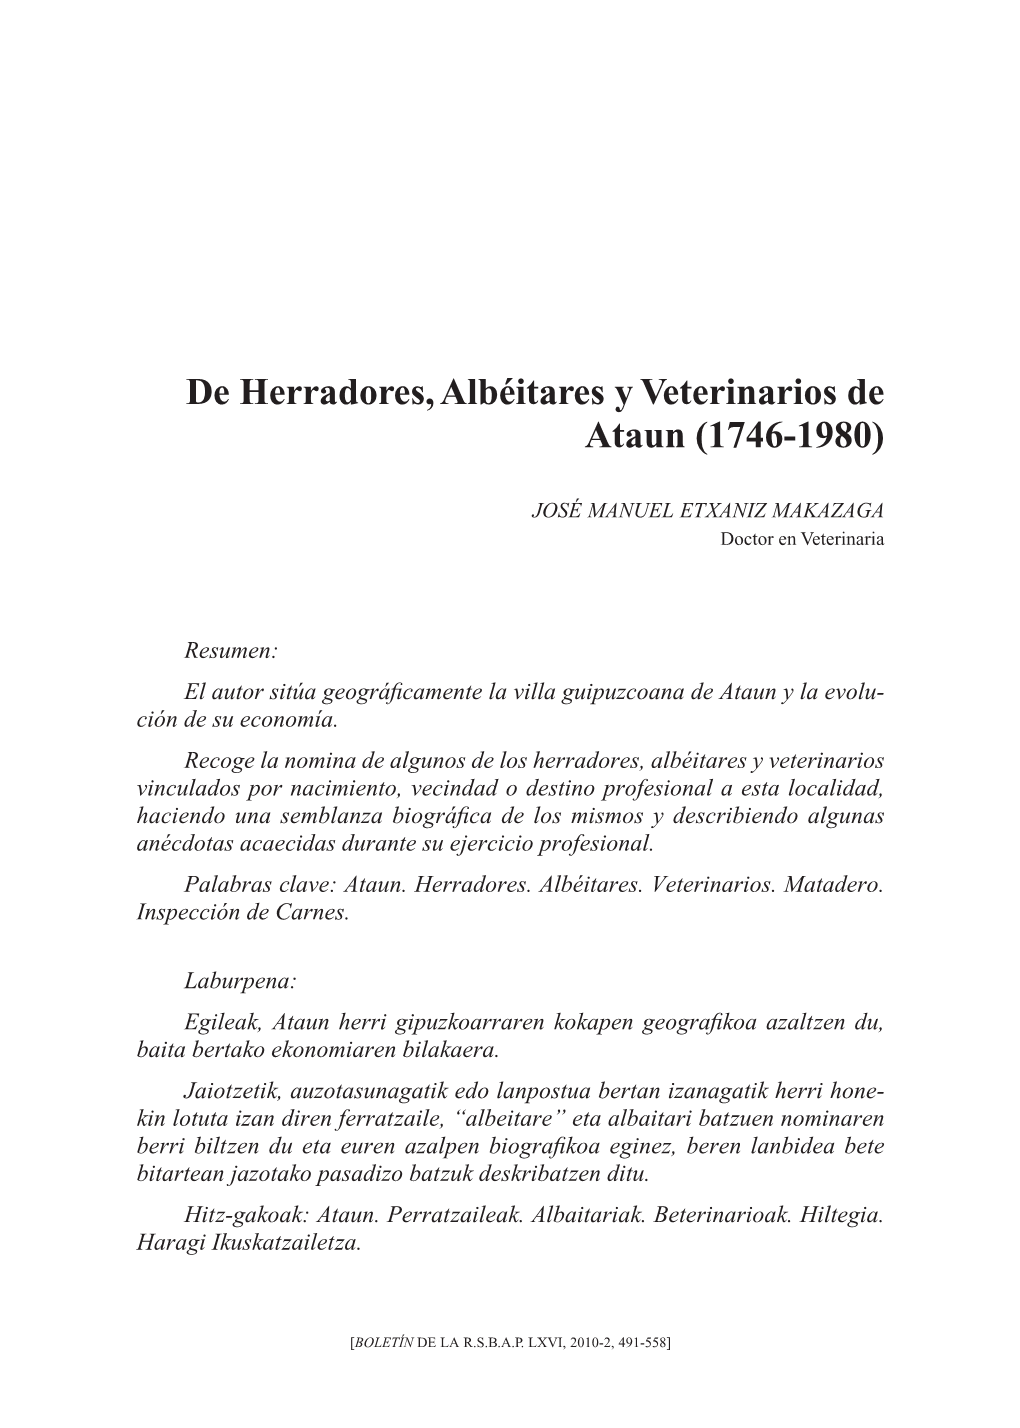 De Herradores, Albéitares Y Veterinarios De Ataun (1746-1980)